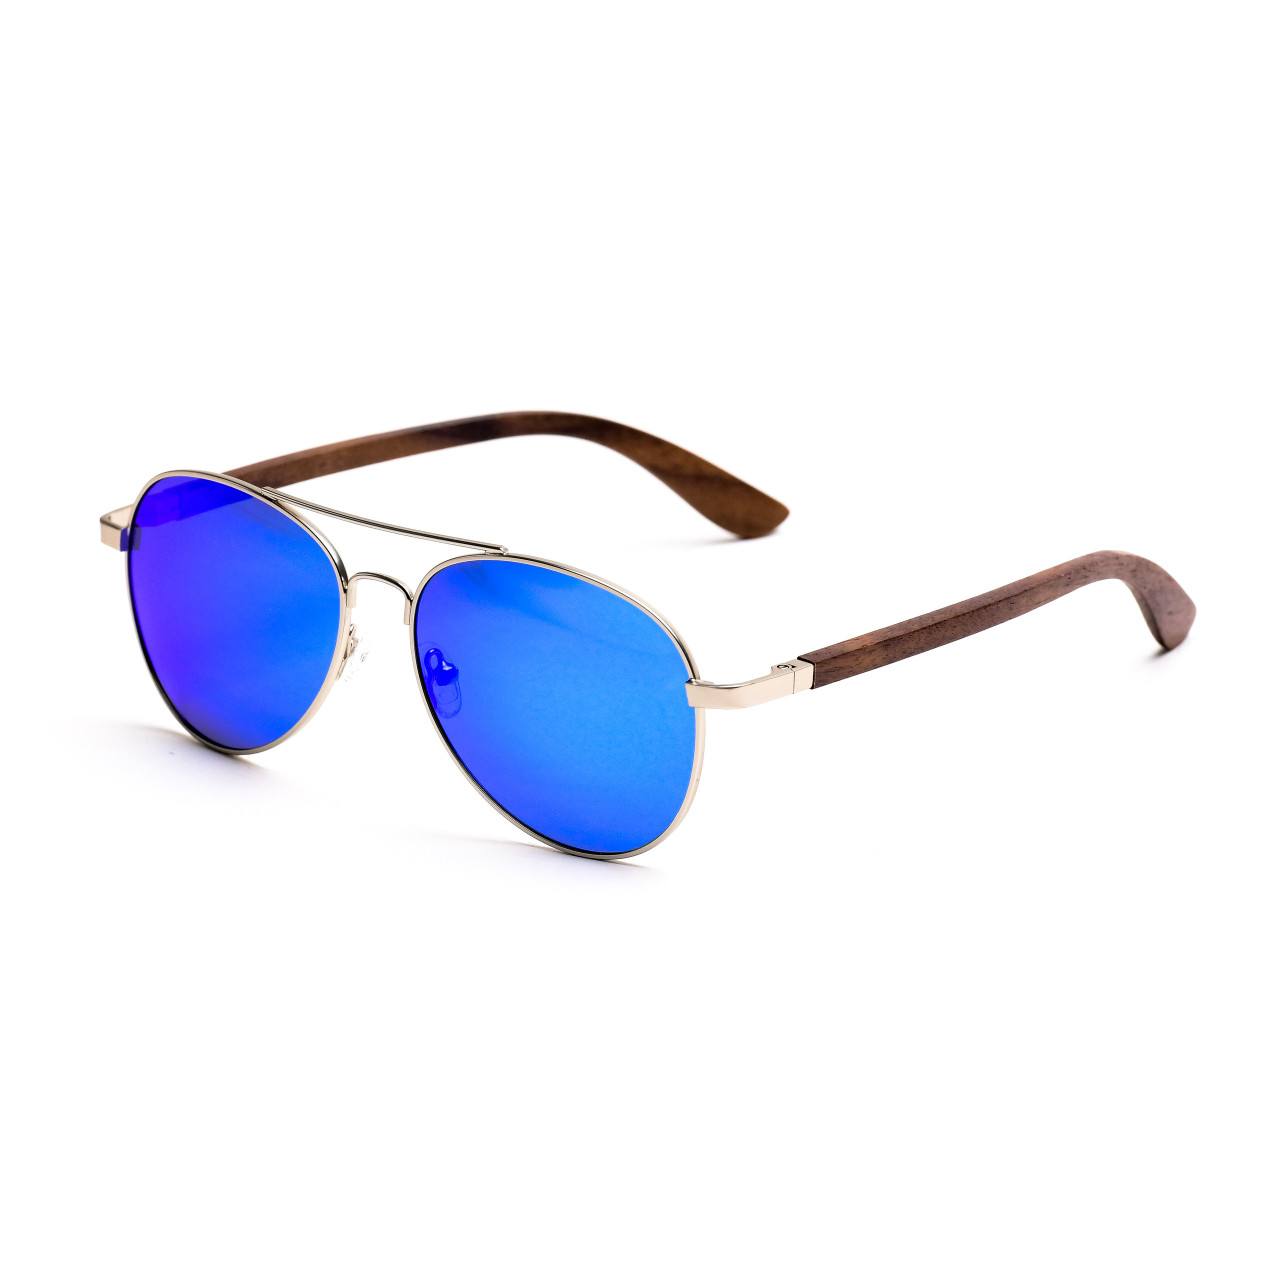 Brýle Aviator – modré čočky + tmavý ořech